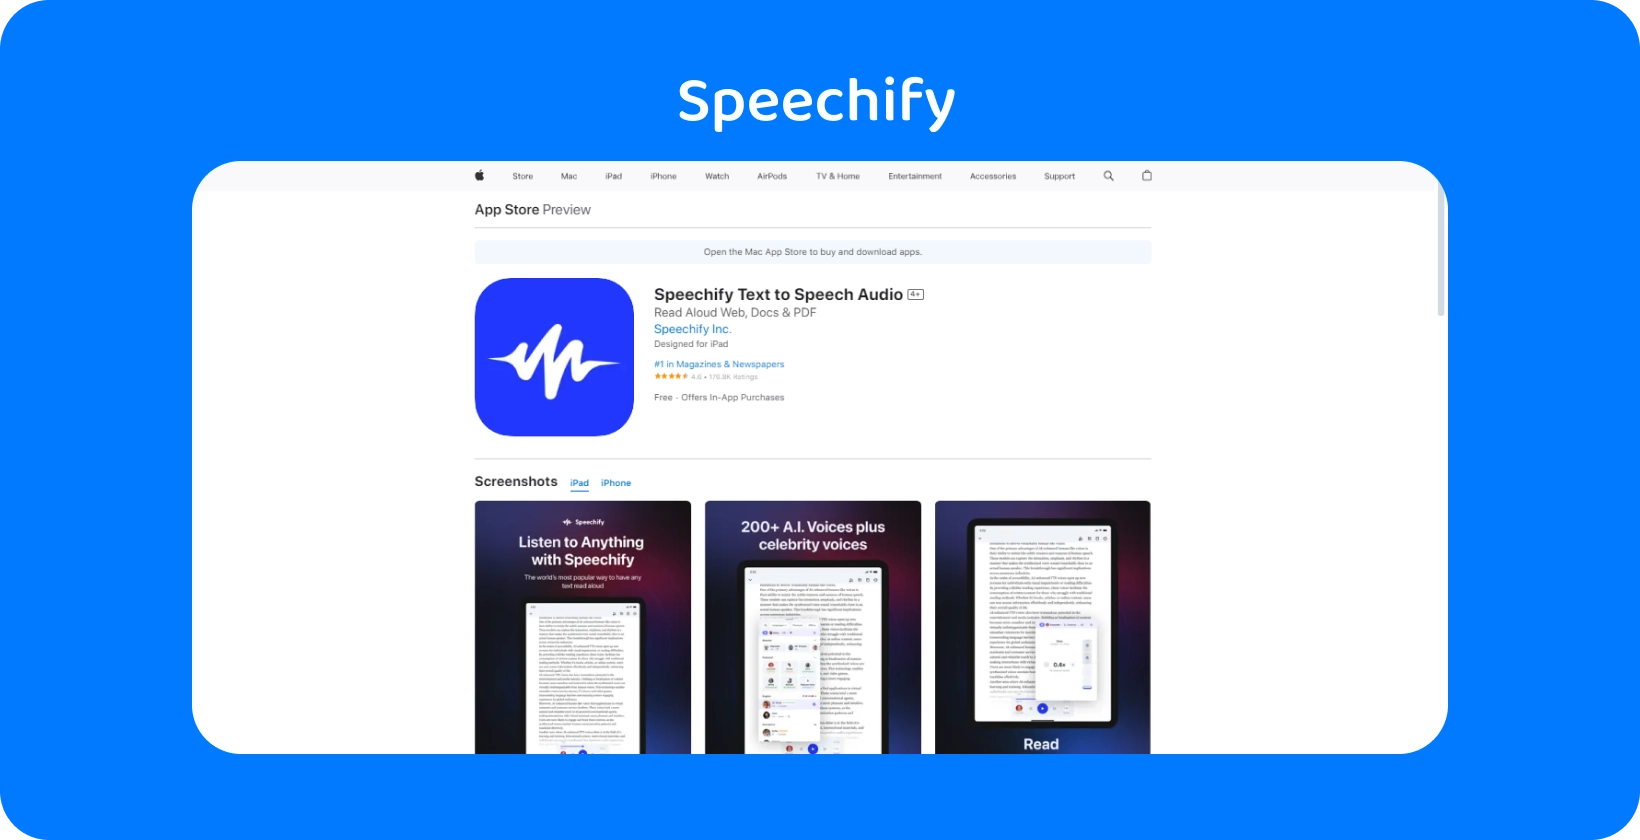 Aplikace Speechify v App Store zobrazující funkce pro převod textu na řeč s různými hlasovými možnostmi.